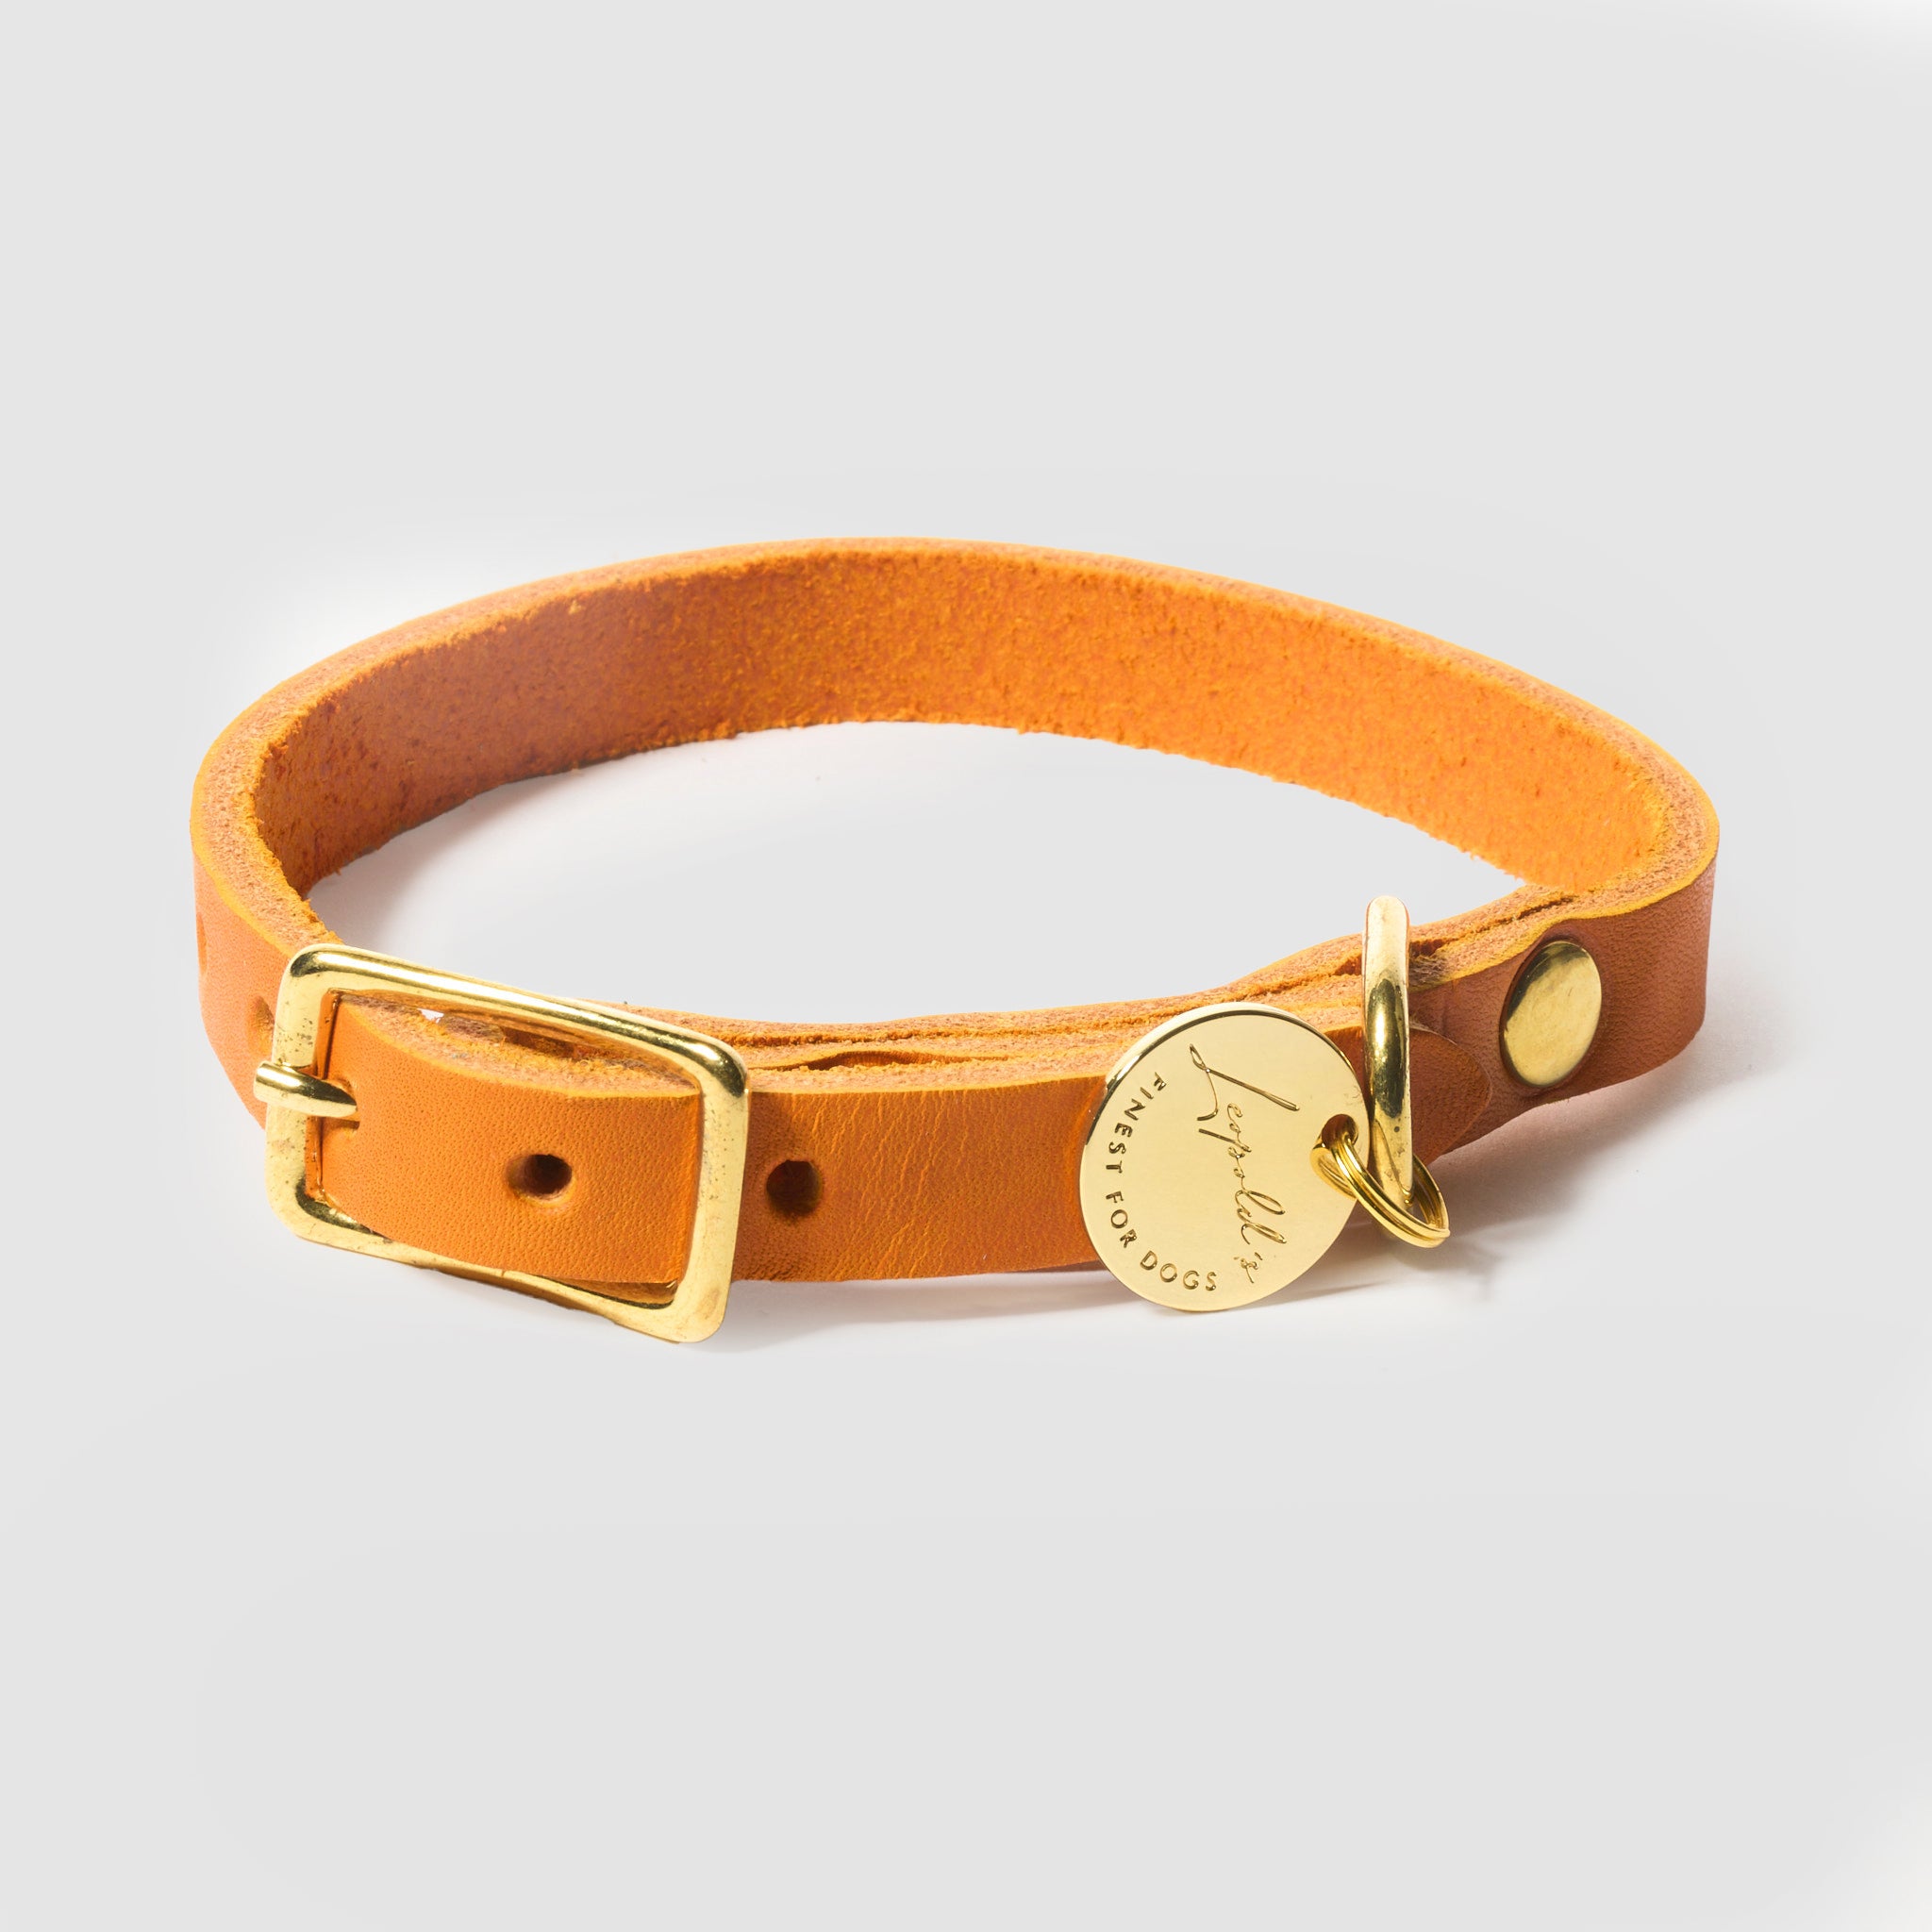 Hundehalsband Fettleder Orange-Gold / 26-32cm - von Leopold's kaufen bei leopolds-finest [orange-gold]